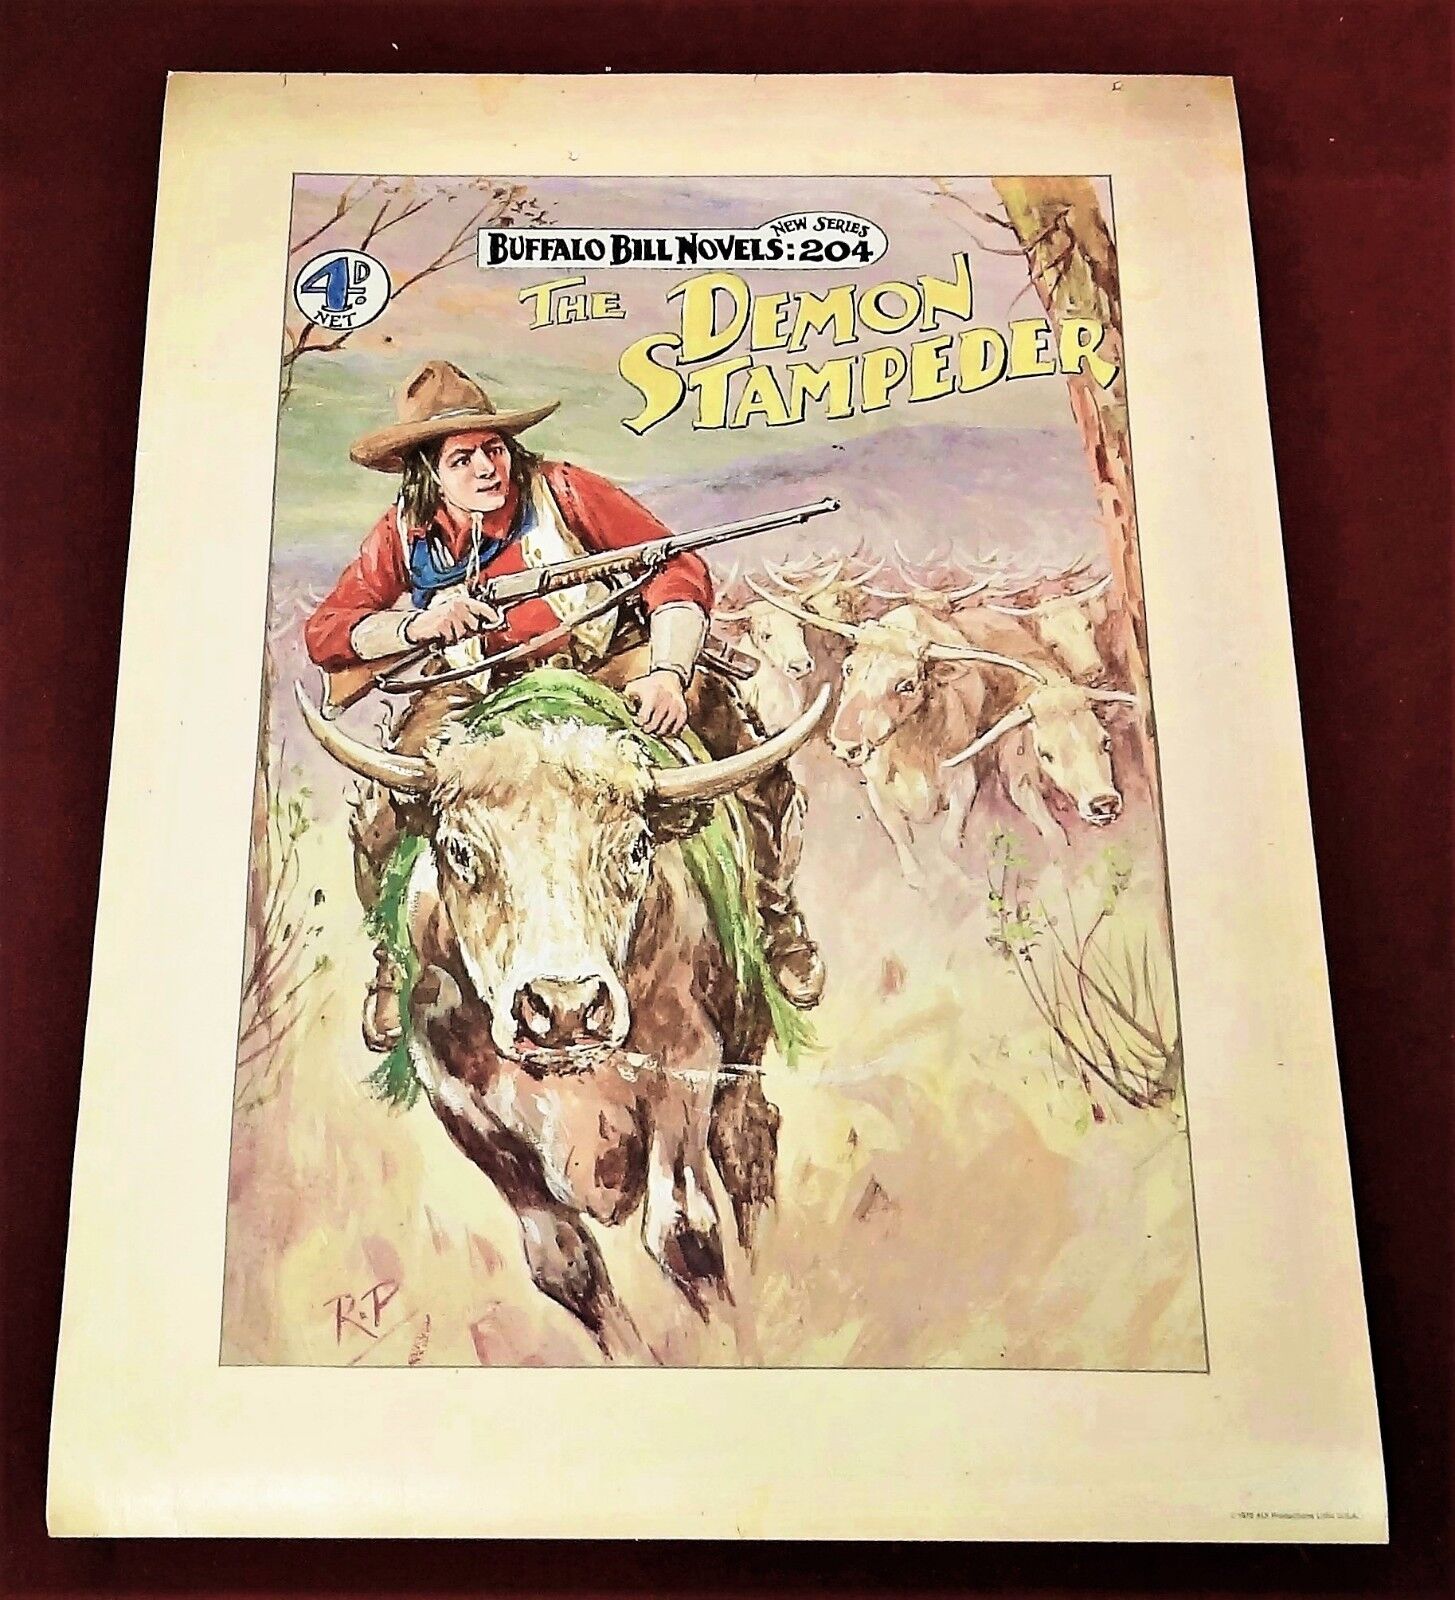 1978 Buffalo Bill Dime Novels Full Color Poster-The Demon Stampeder